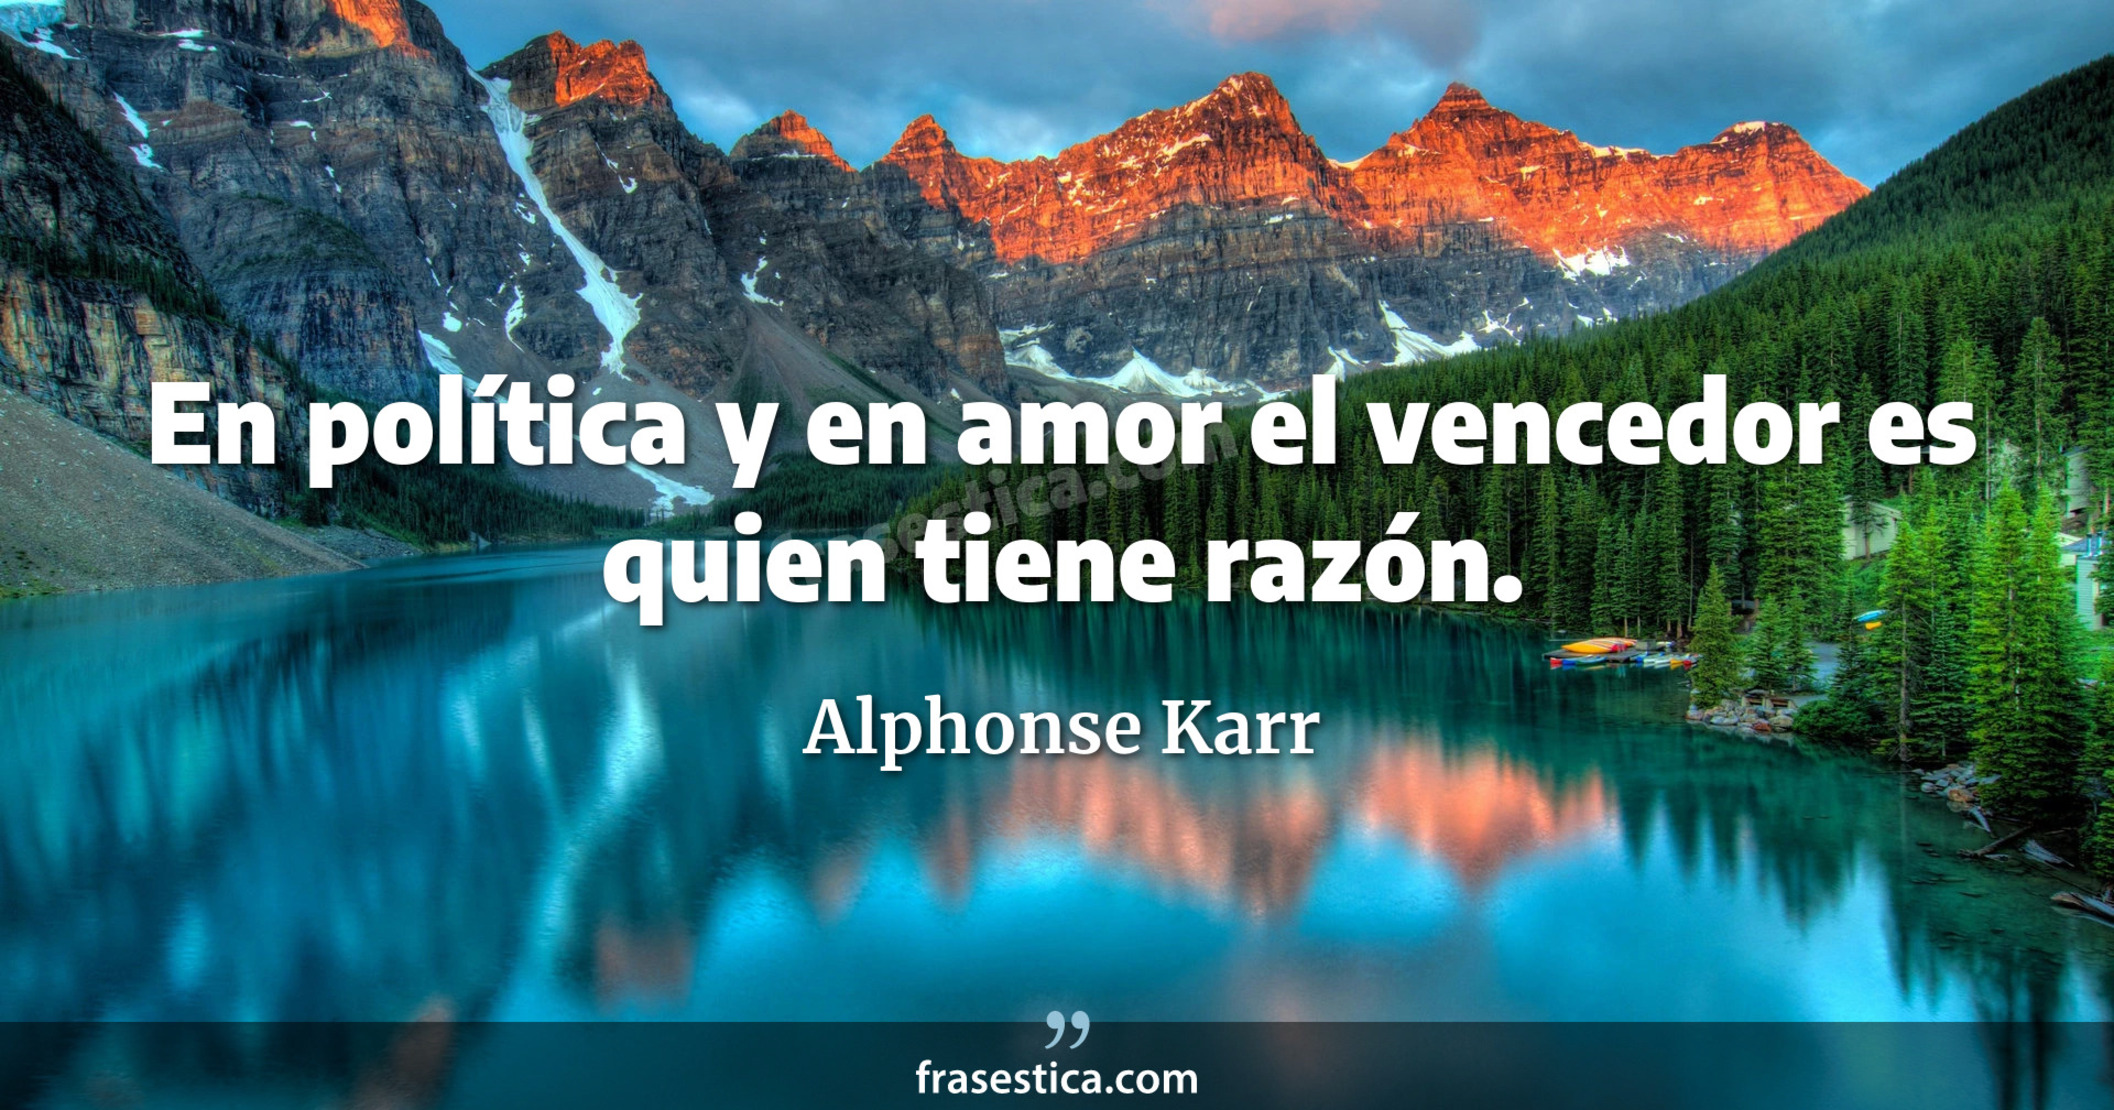 En política y en amor el vencedor es quien tiene razón. - Alphonse Karr